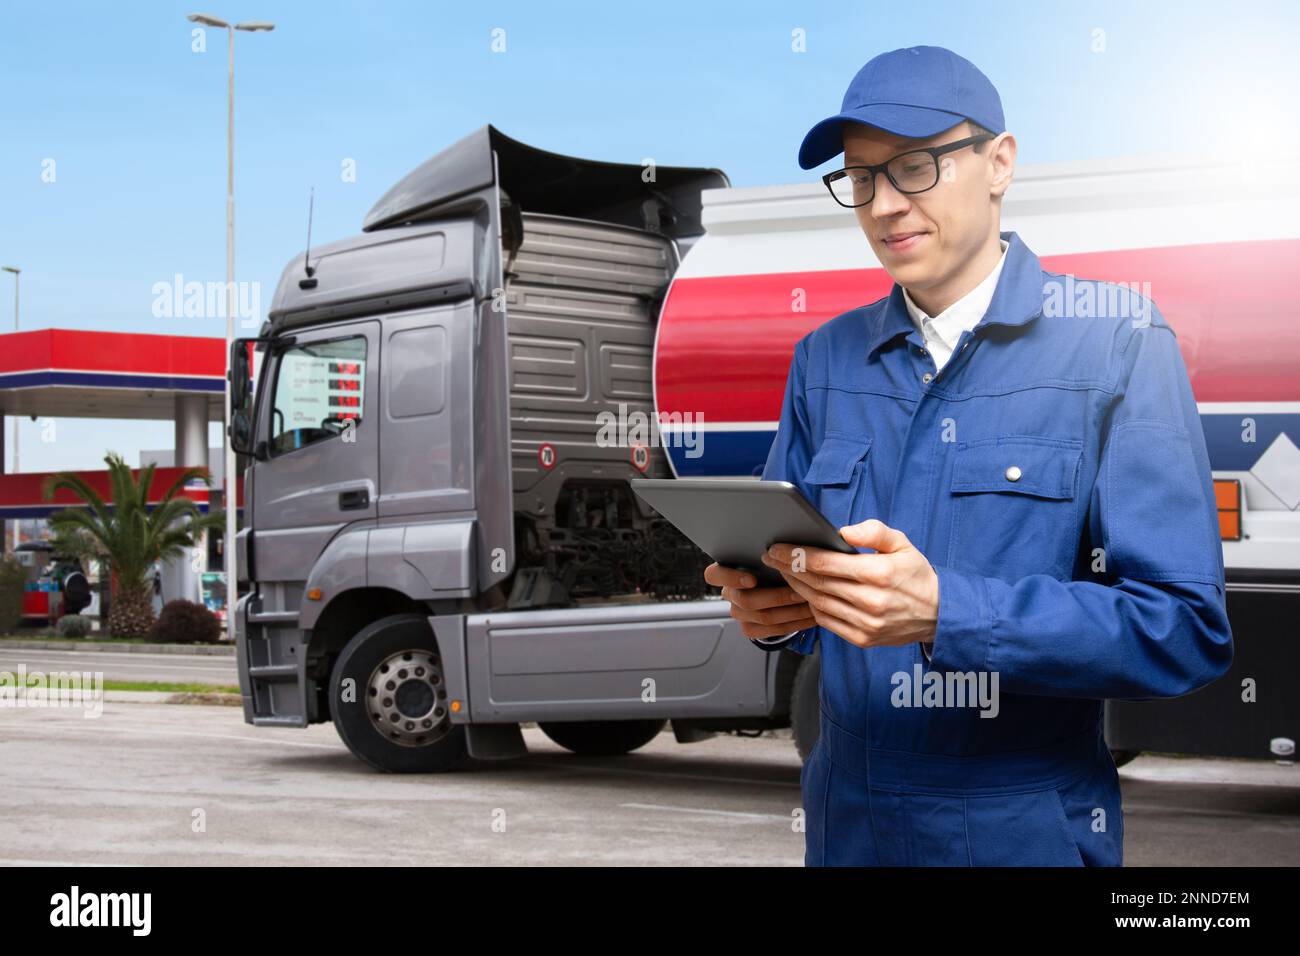 Uomo con tablet digitale sullo sfondo di un veicolo a benzina con rimorchio cisterna e una stazione di servizio Foto Stock